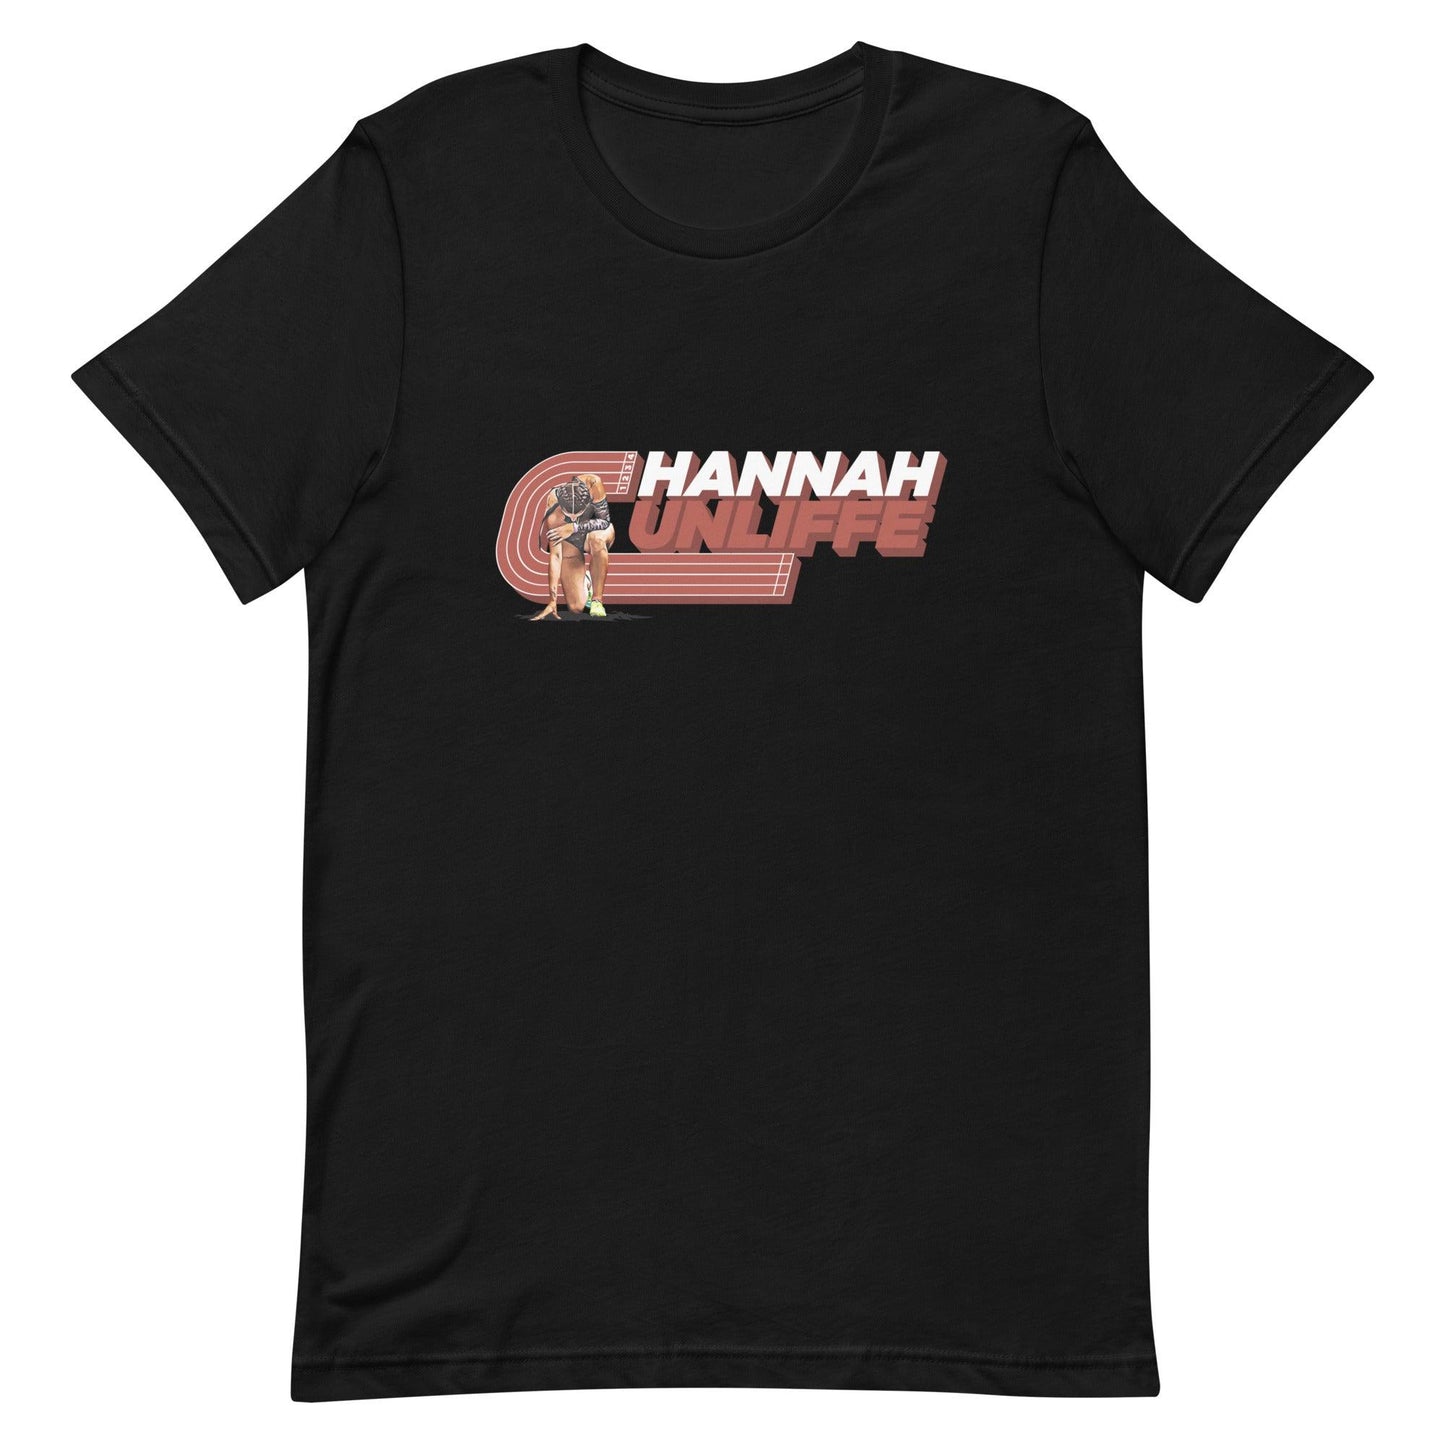 Hannah Cunliffe "Essential" t-shirt - Fan Arch